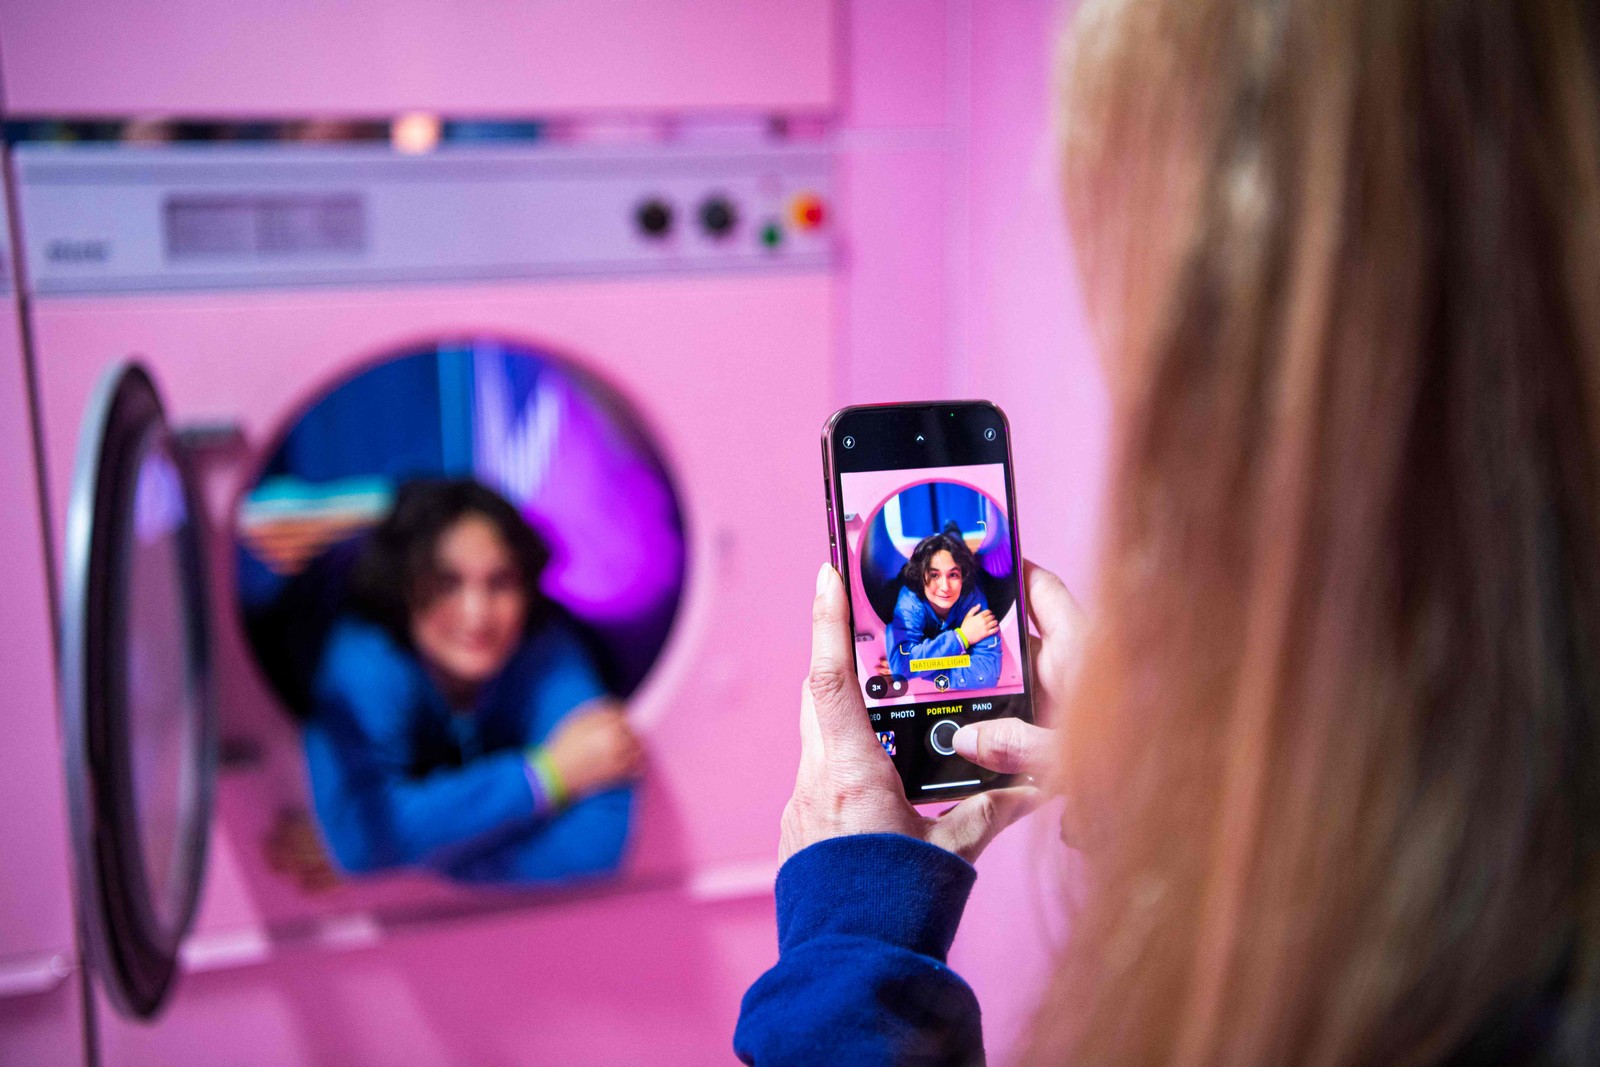 Pessoas visitam a "laundry room" e tiram fotos dentro das máquinas de lavar, no Youseum, em Solna, perto de EstocolmoAFP